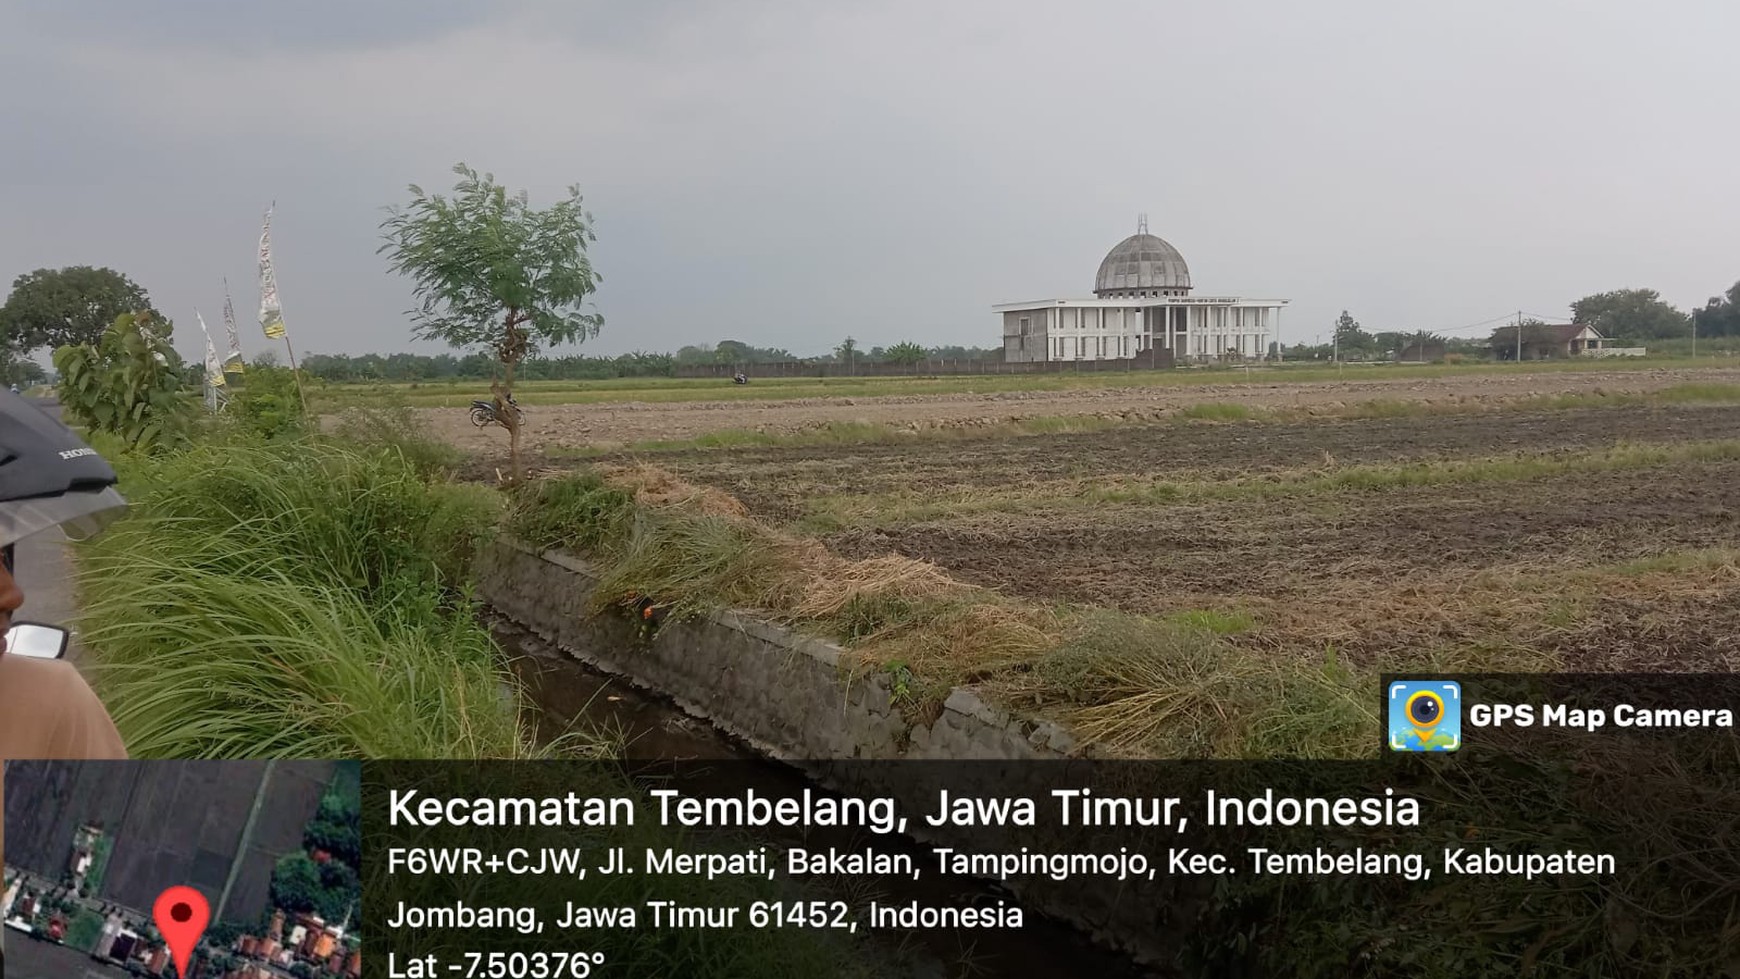 Dijual Tanah Persawahan dengan Luas 10 Hektare @Jombang